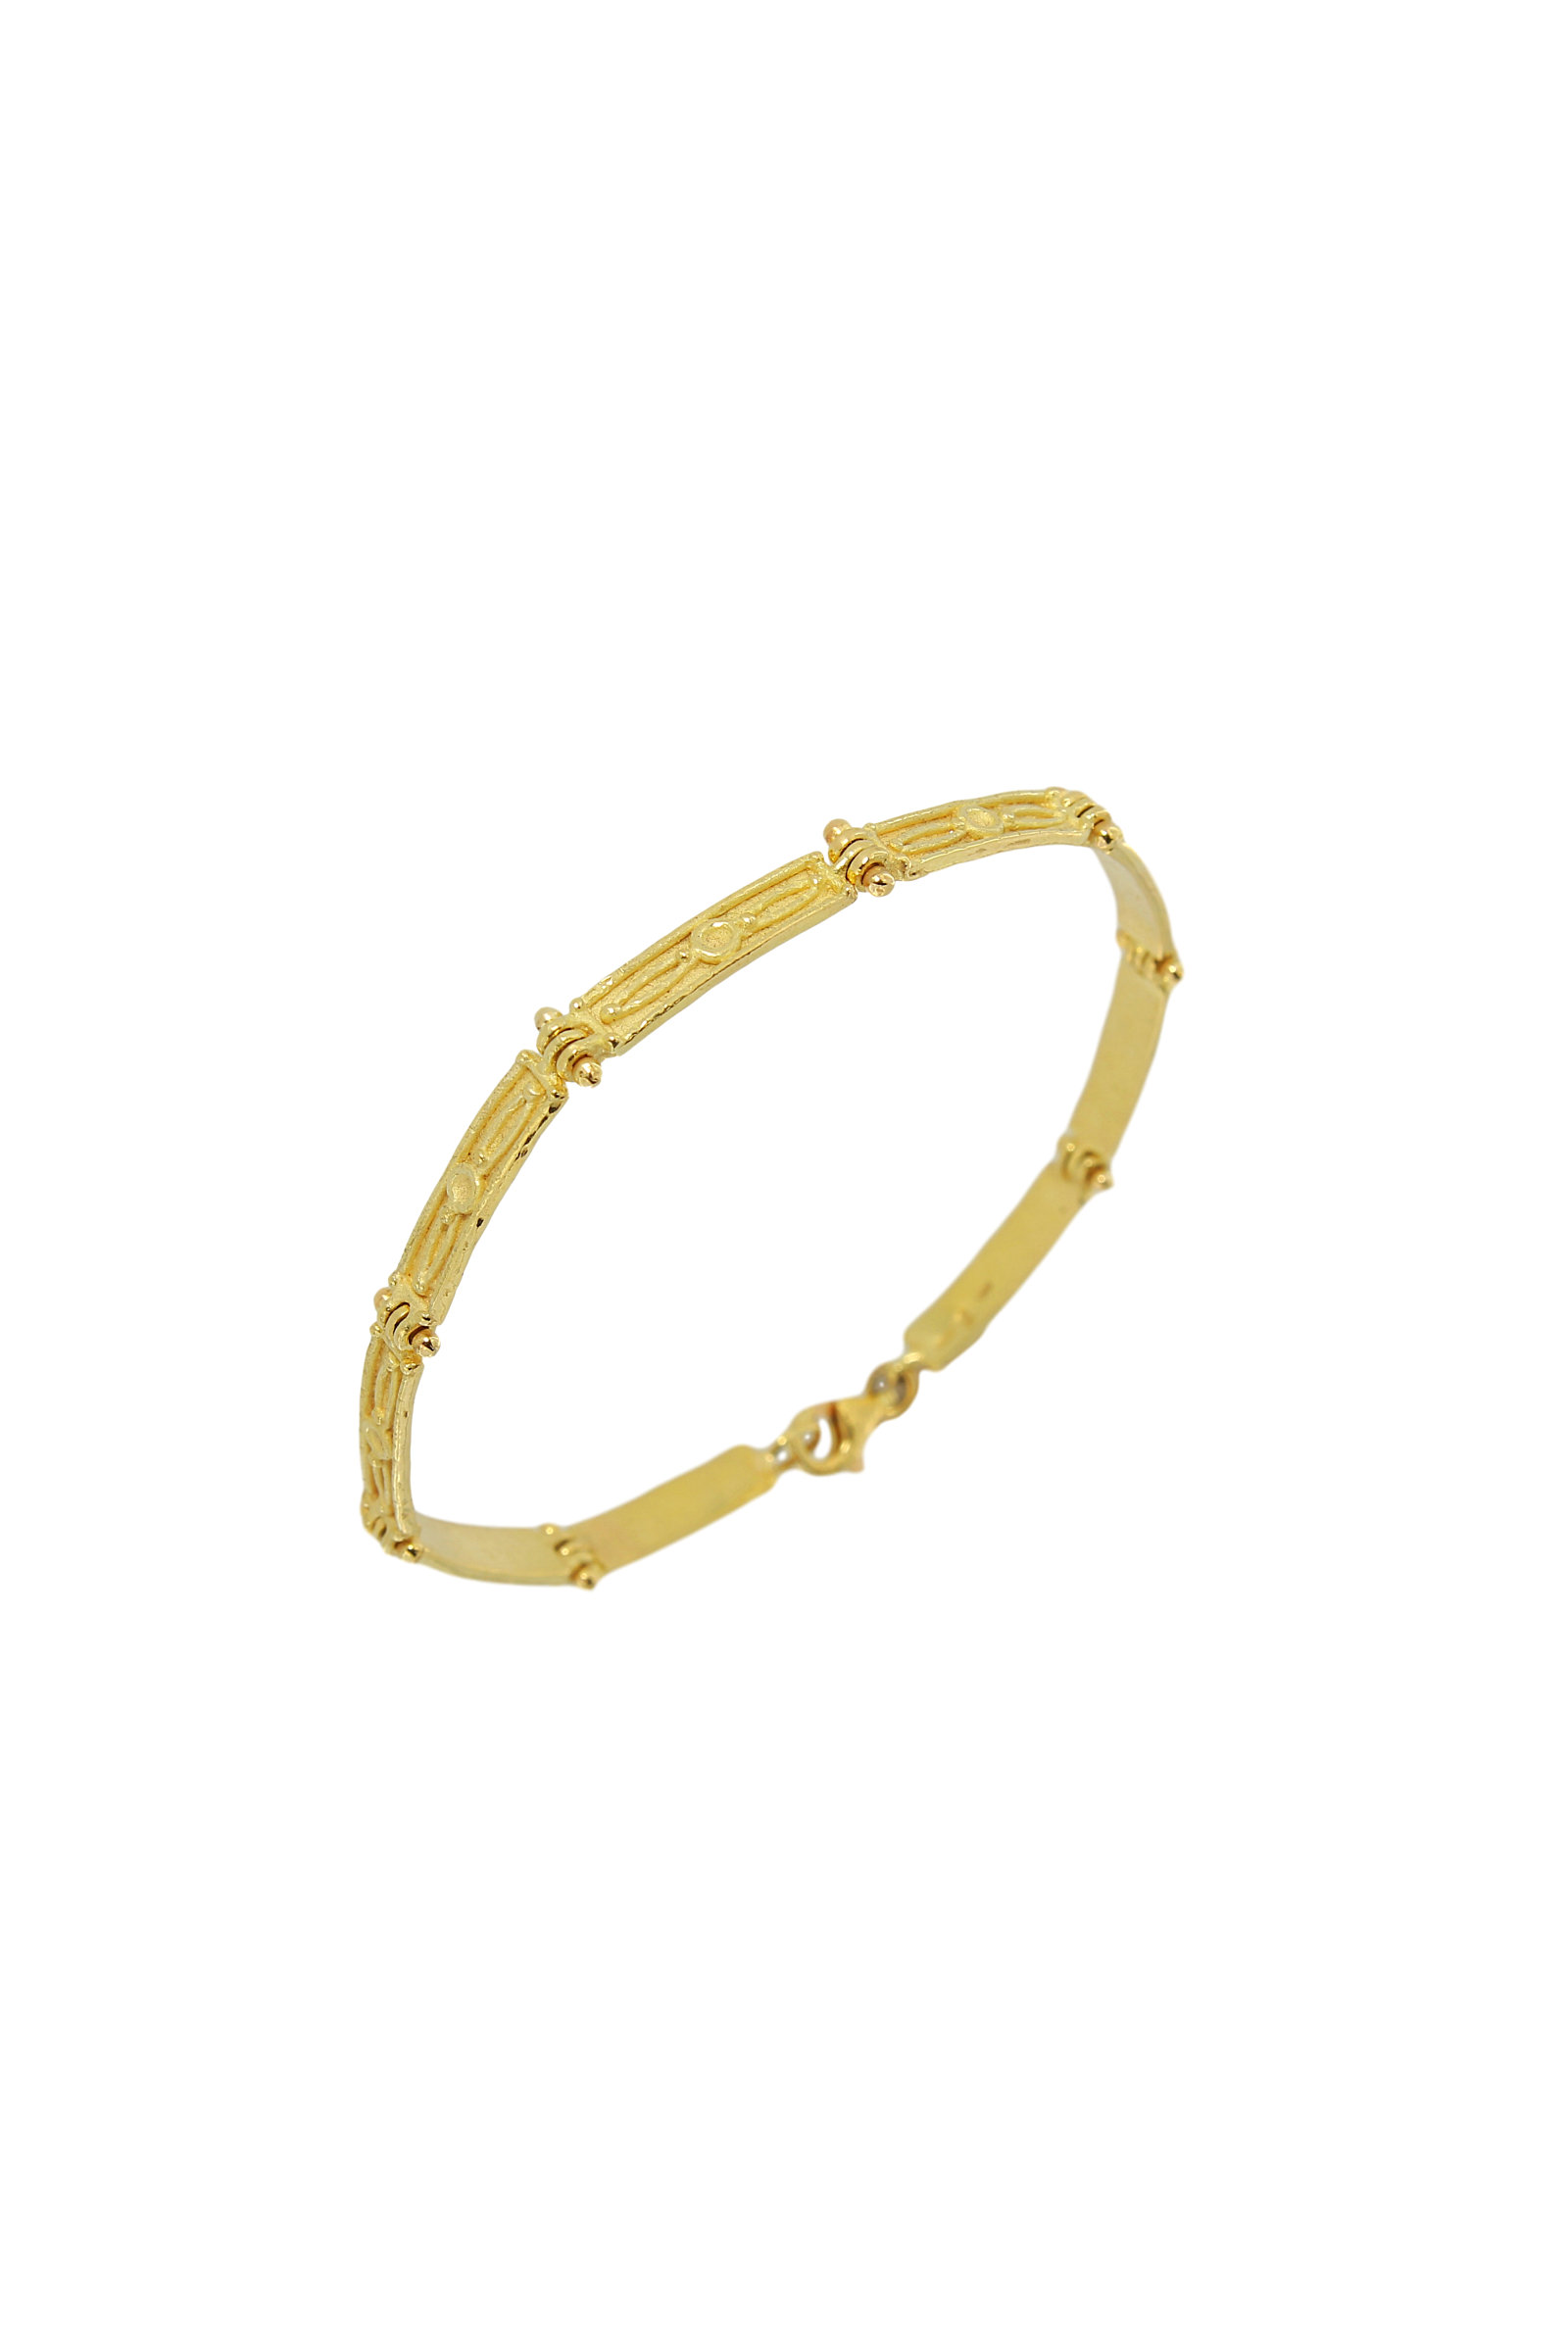 SB246A-18-Kt-Yellow-Gold-Bracelet-1